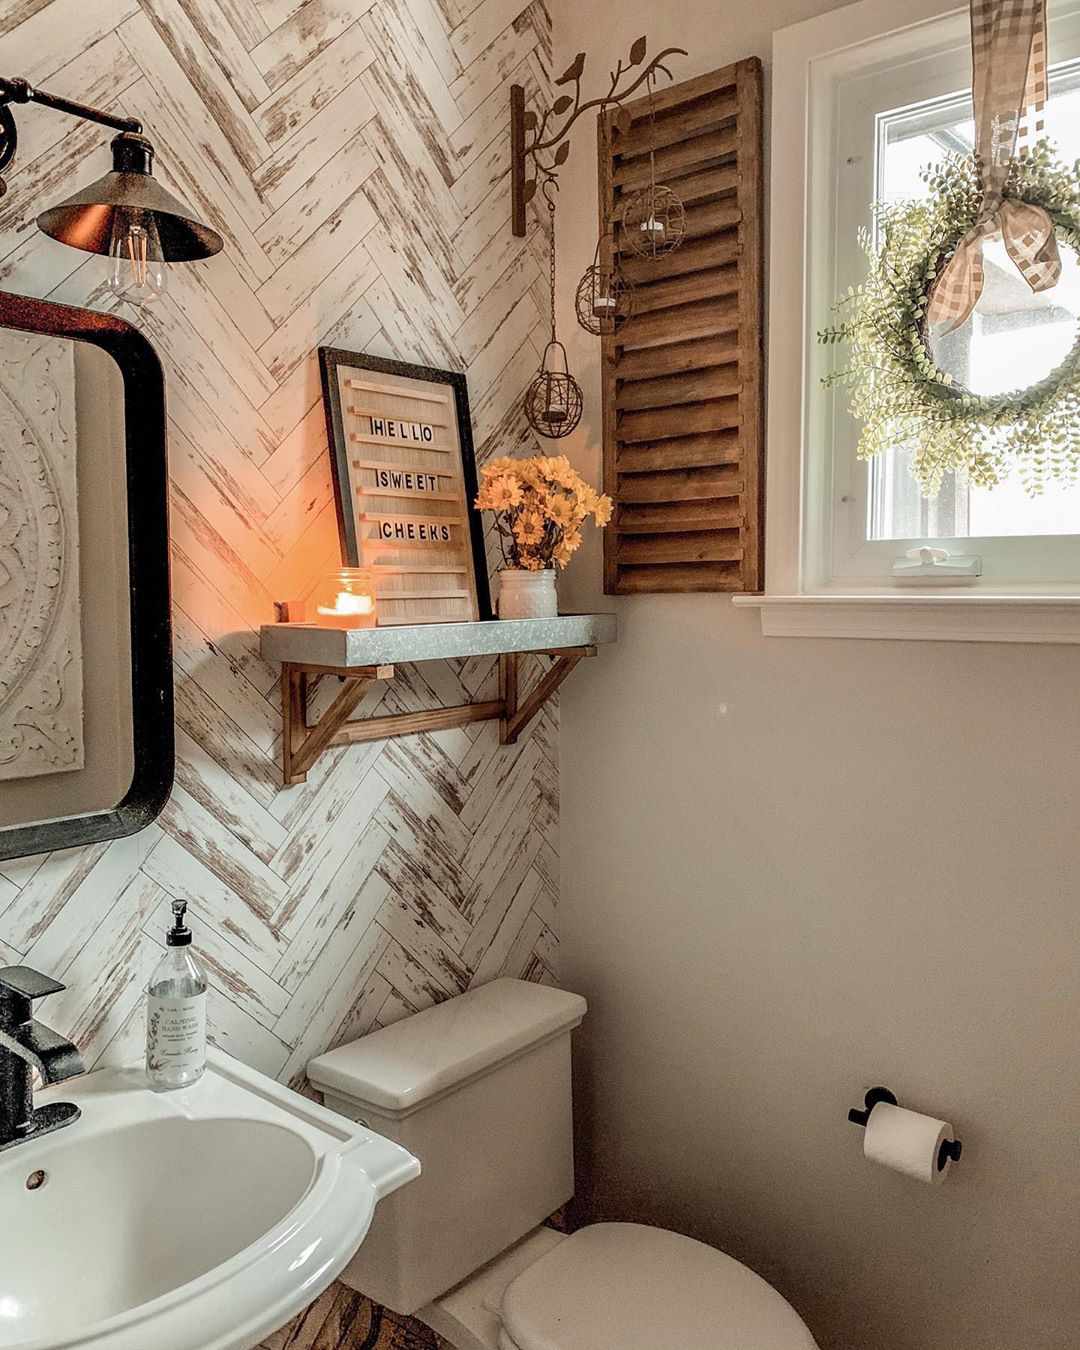 Salle de bains avec détails rustiques